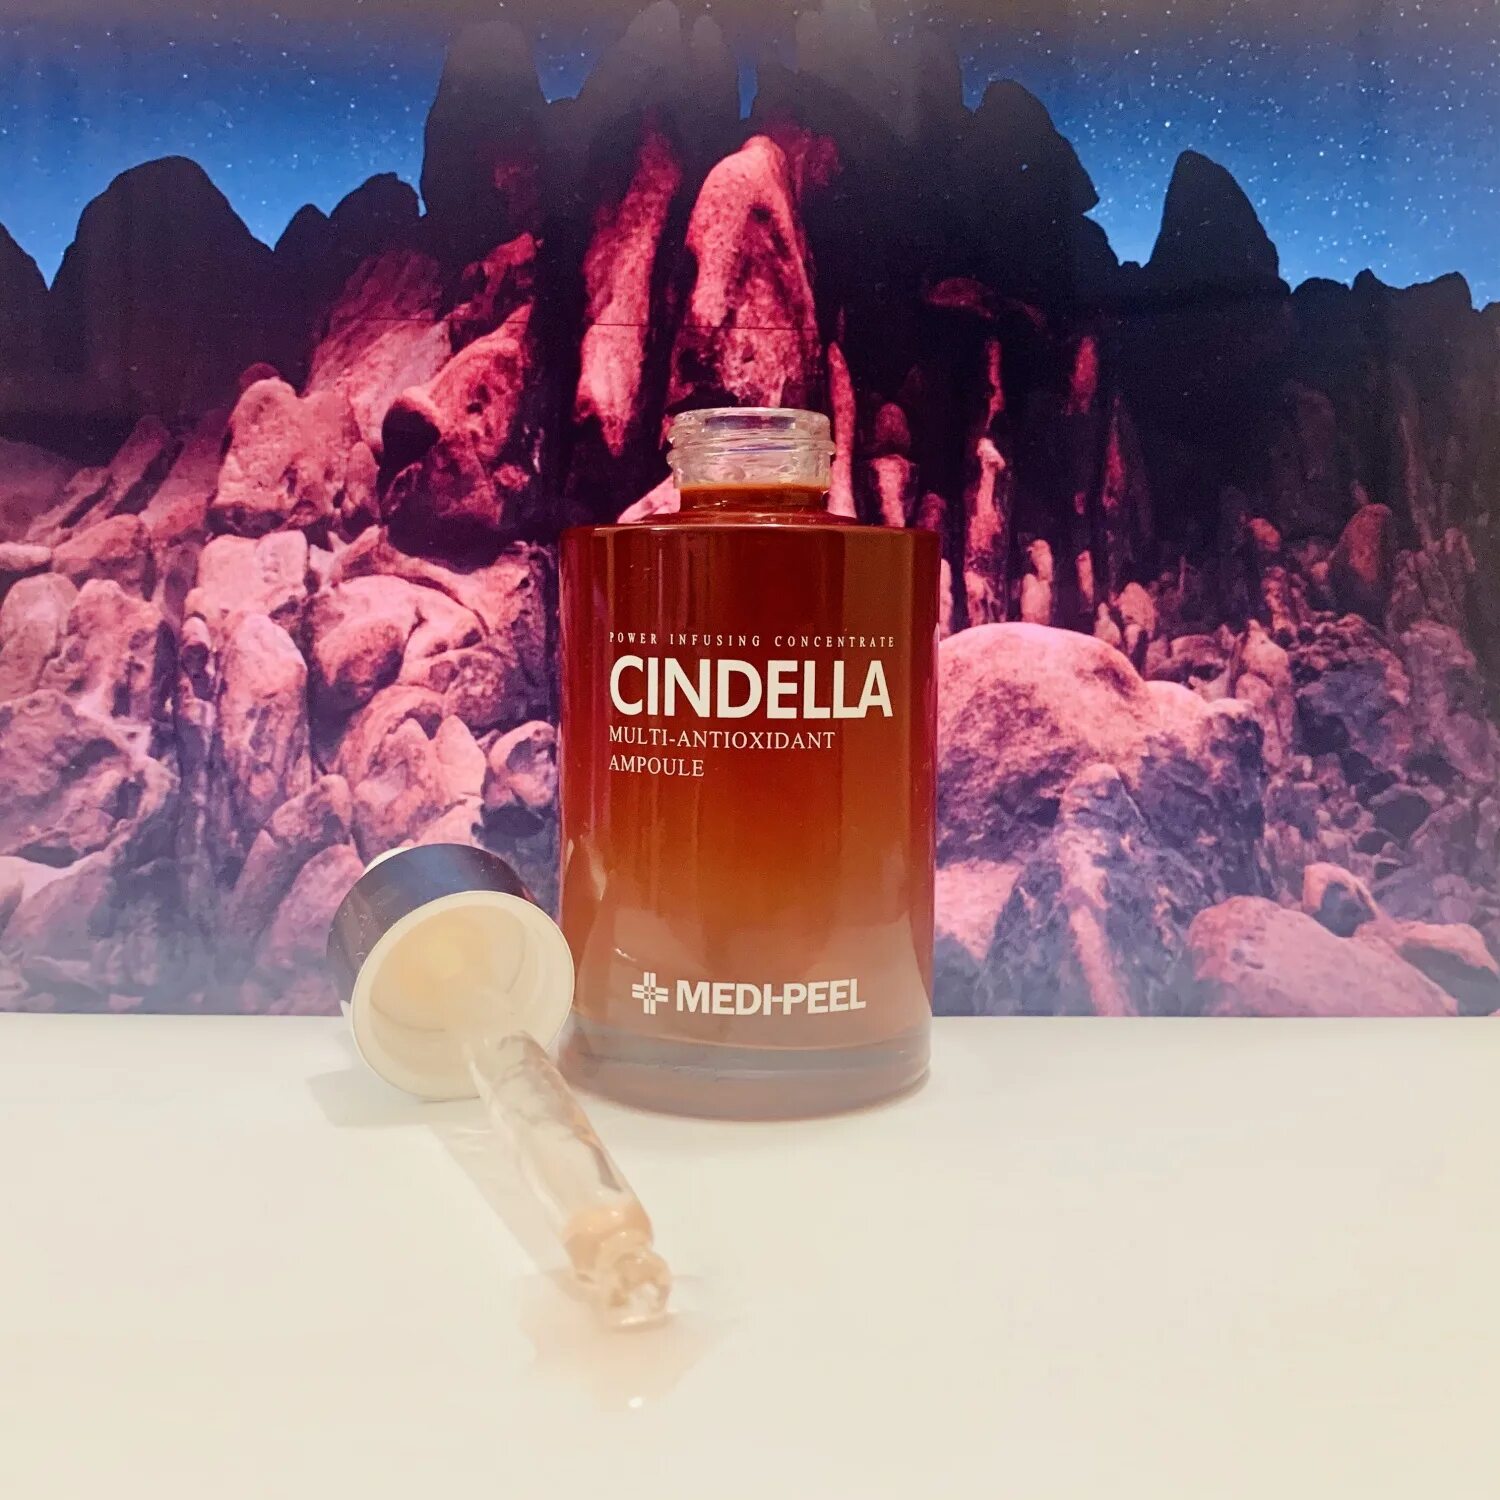 Меди пил сыворотка отзывы. Medi-Peel Cindella Multi-antioxidant Ampoule (100ml ) Мульти-антиоксидантная сыворотка. Меди пил Синделла.